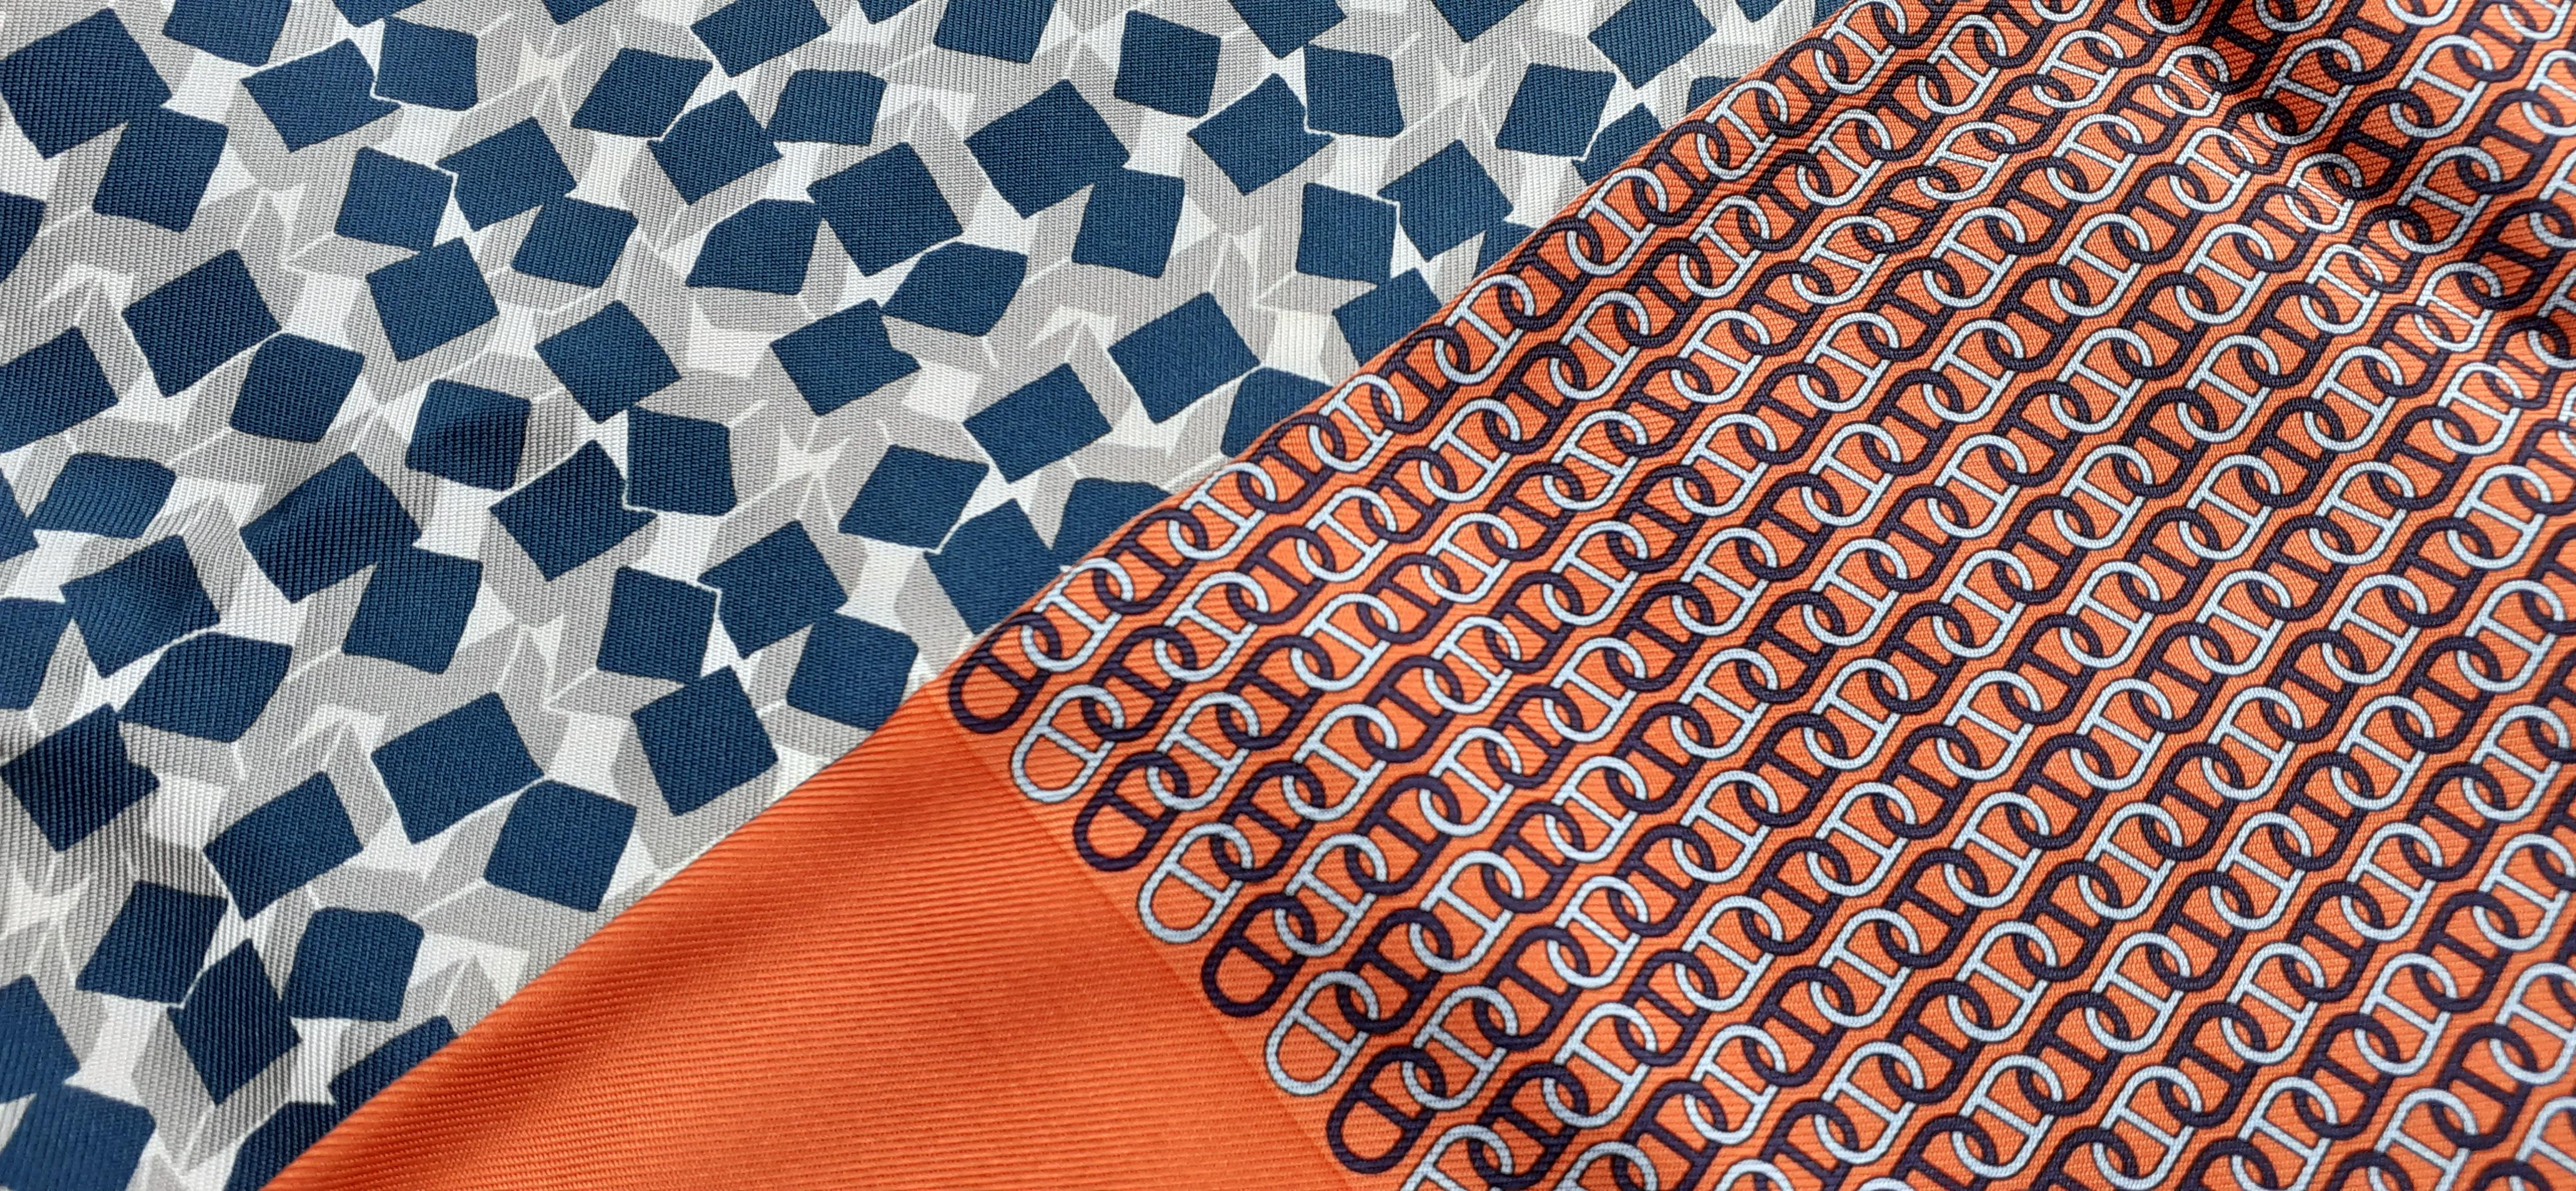 Gorgeous Authentic Hermès Scarf

Patterns: 